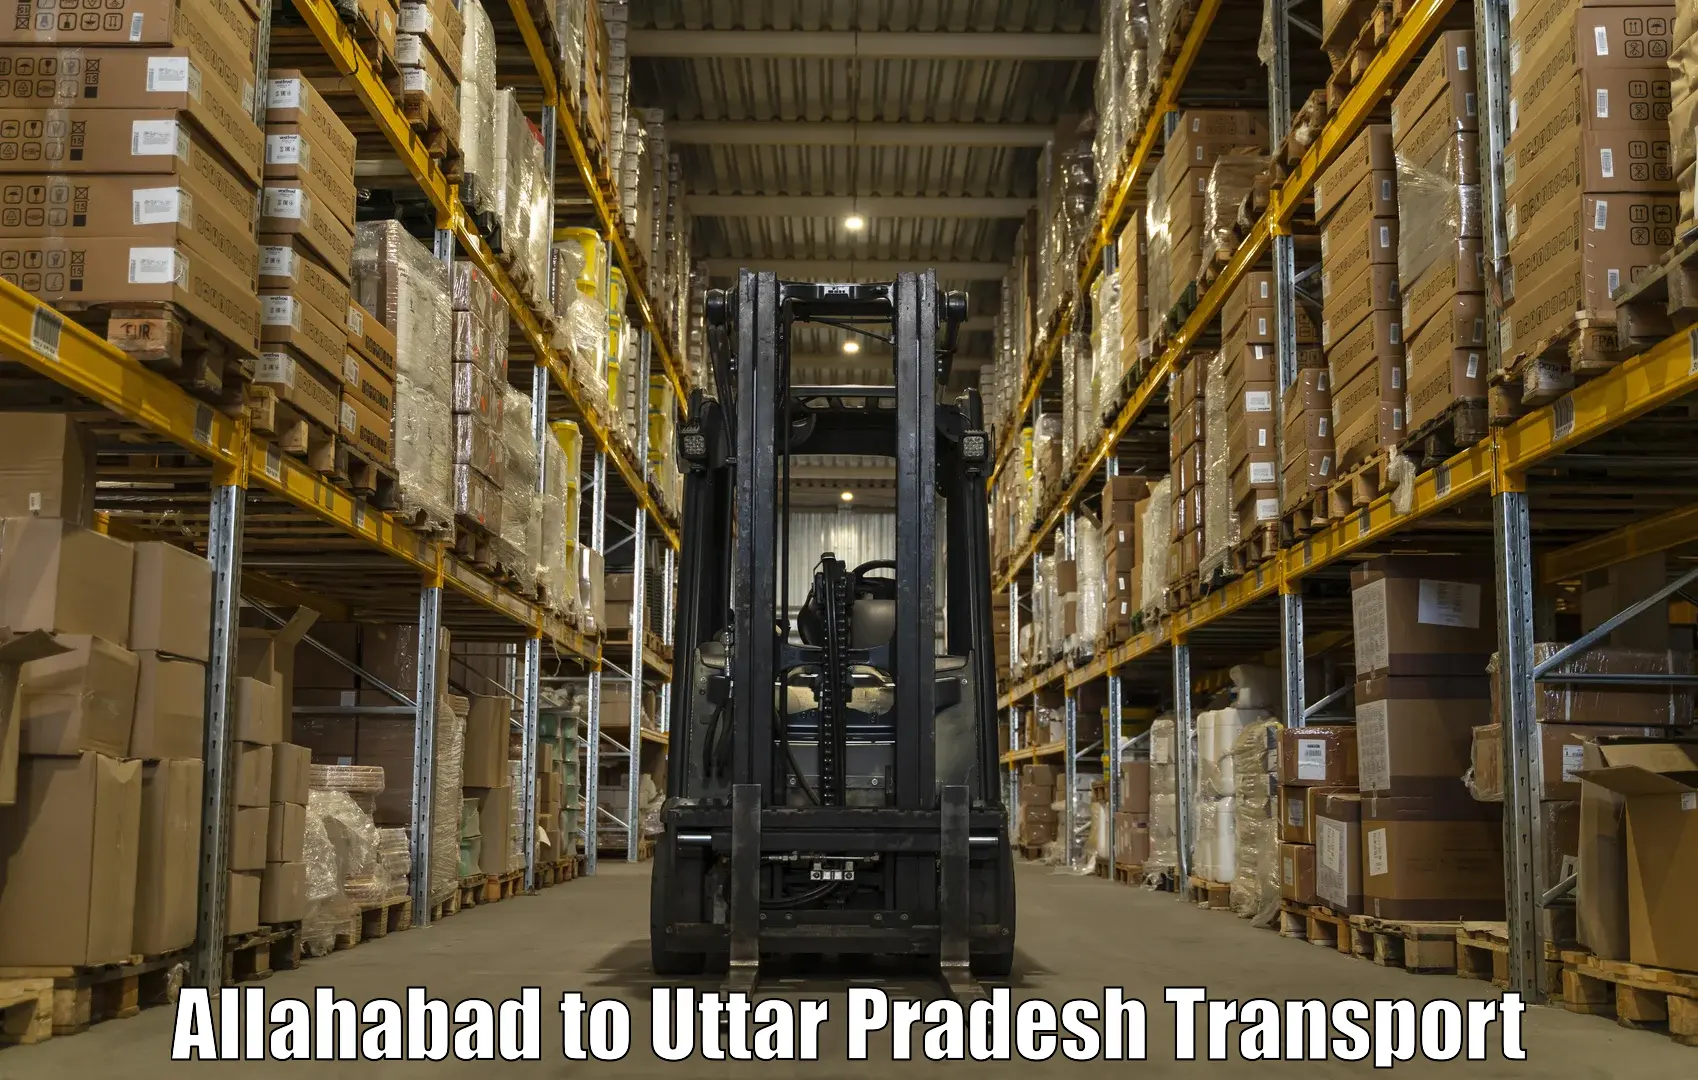 Shipping partner Allahabad to Jyotiba Phule Nagar